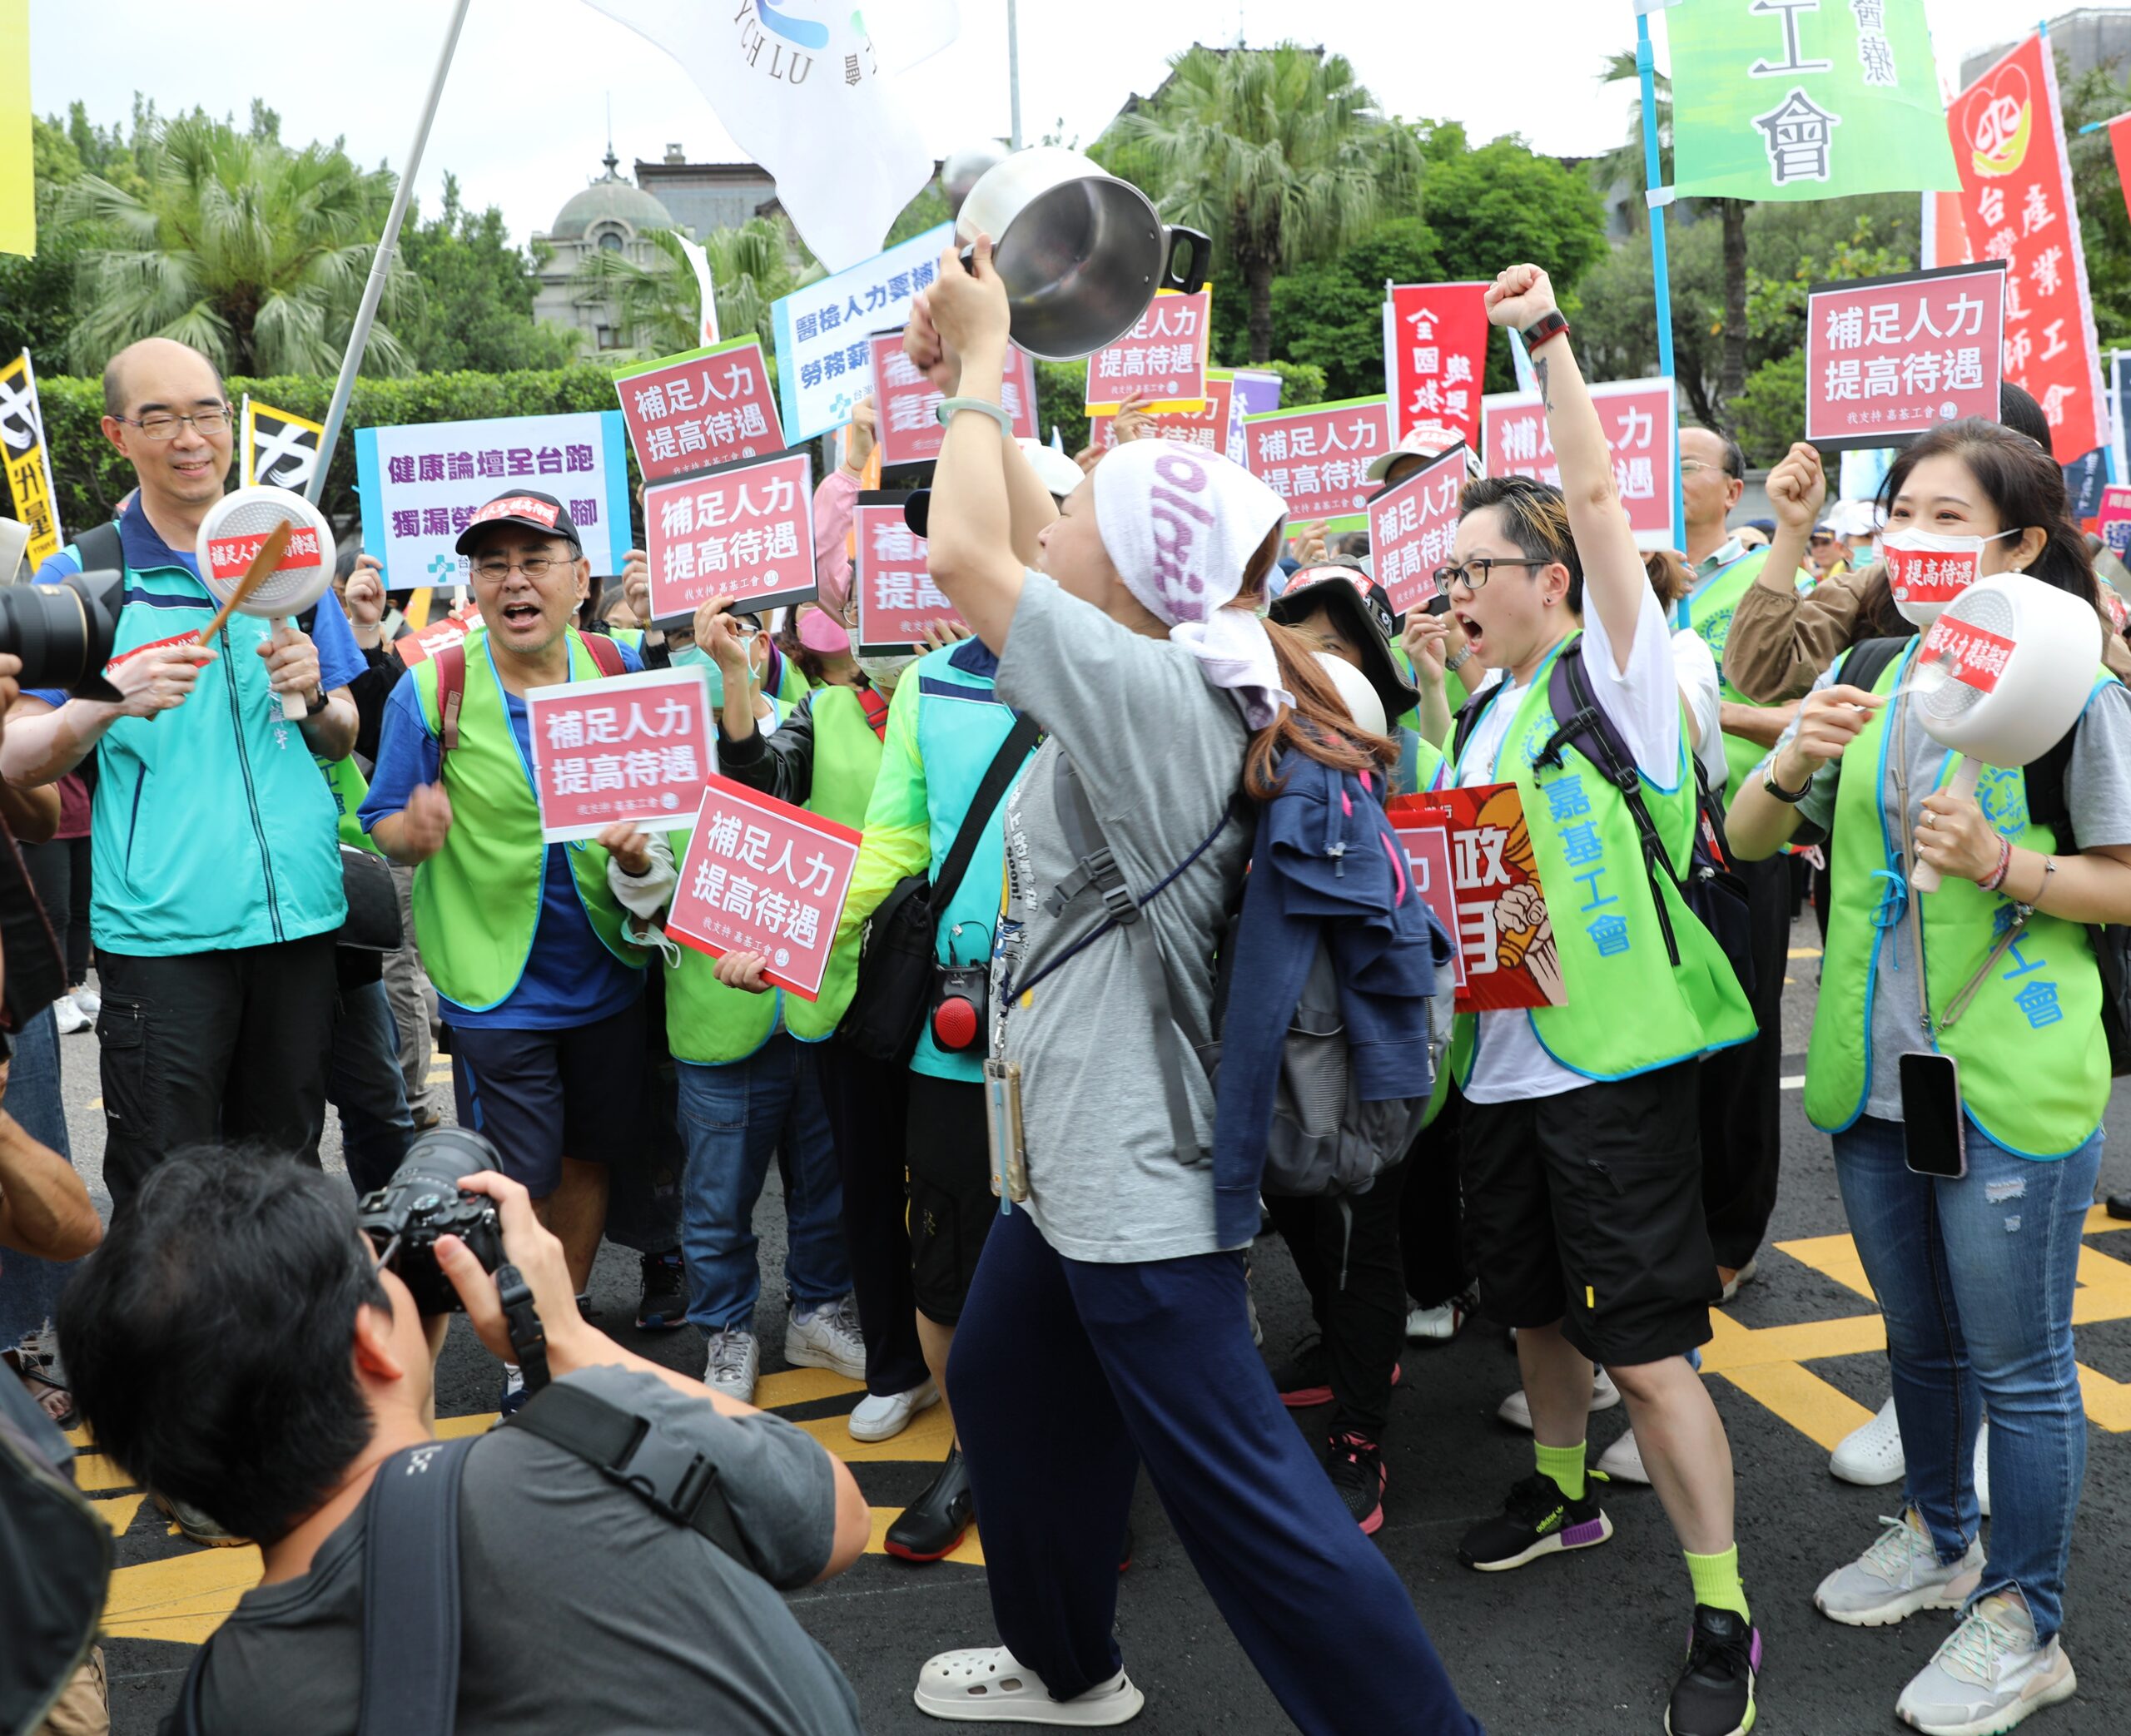 台湾劳工团体举行年度游行 要求当局改善劳动环境